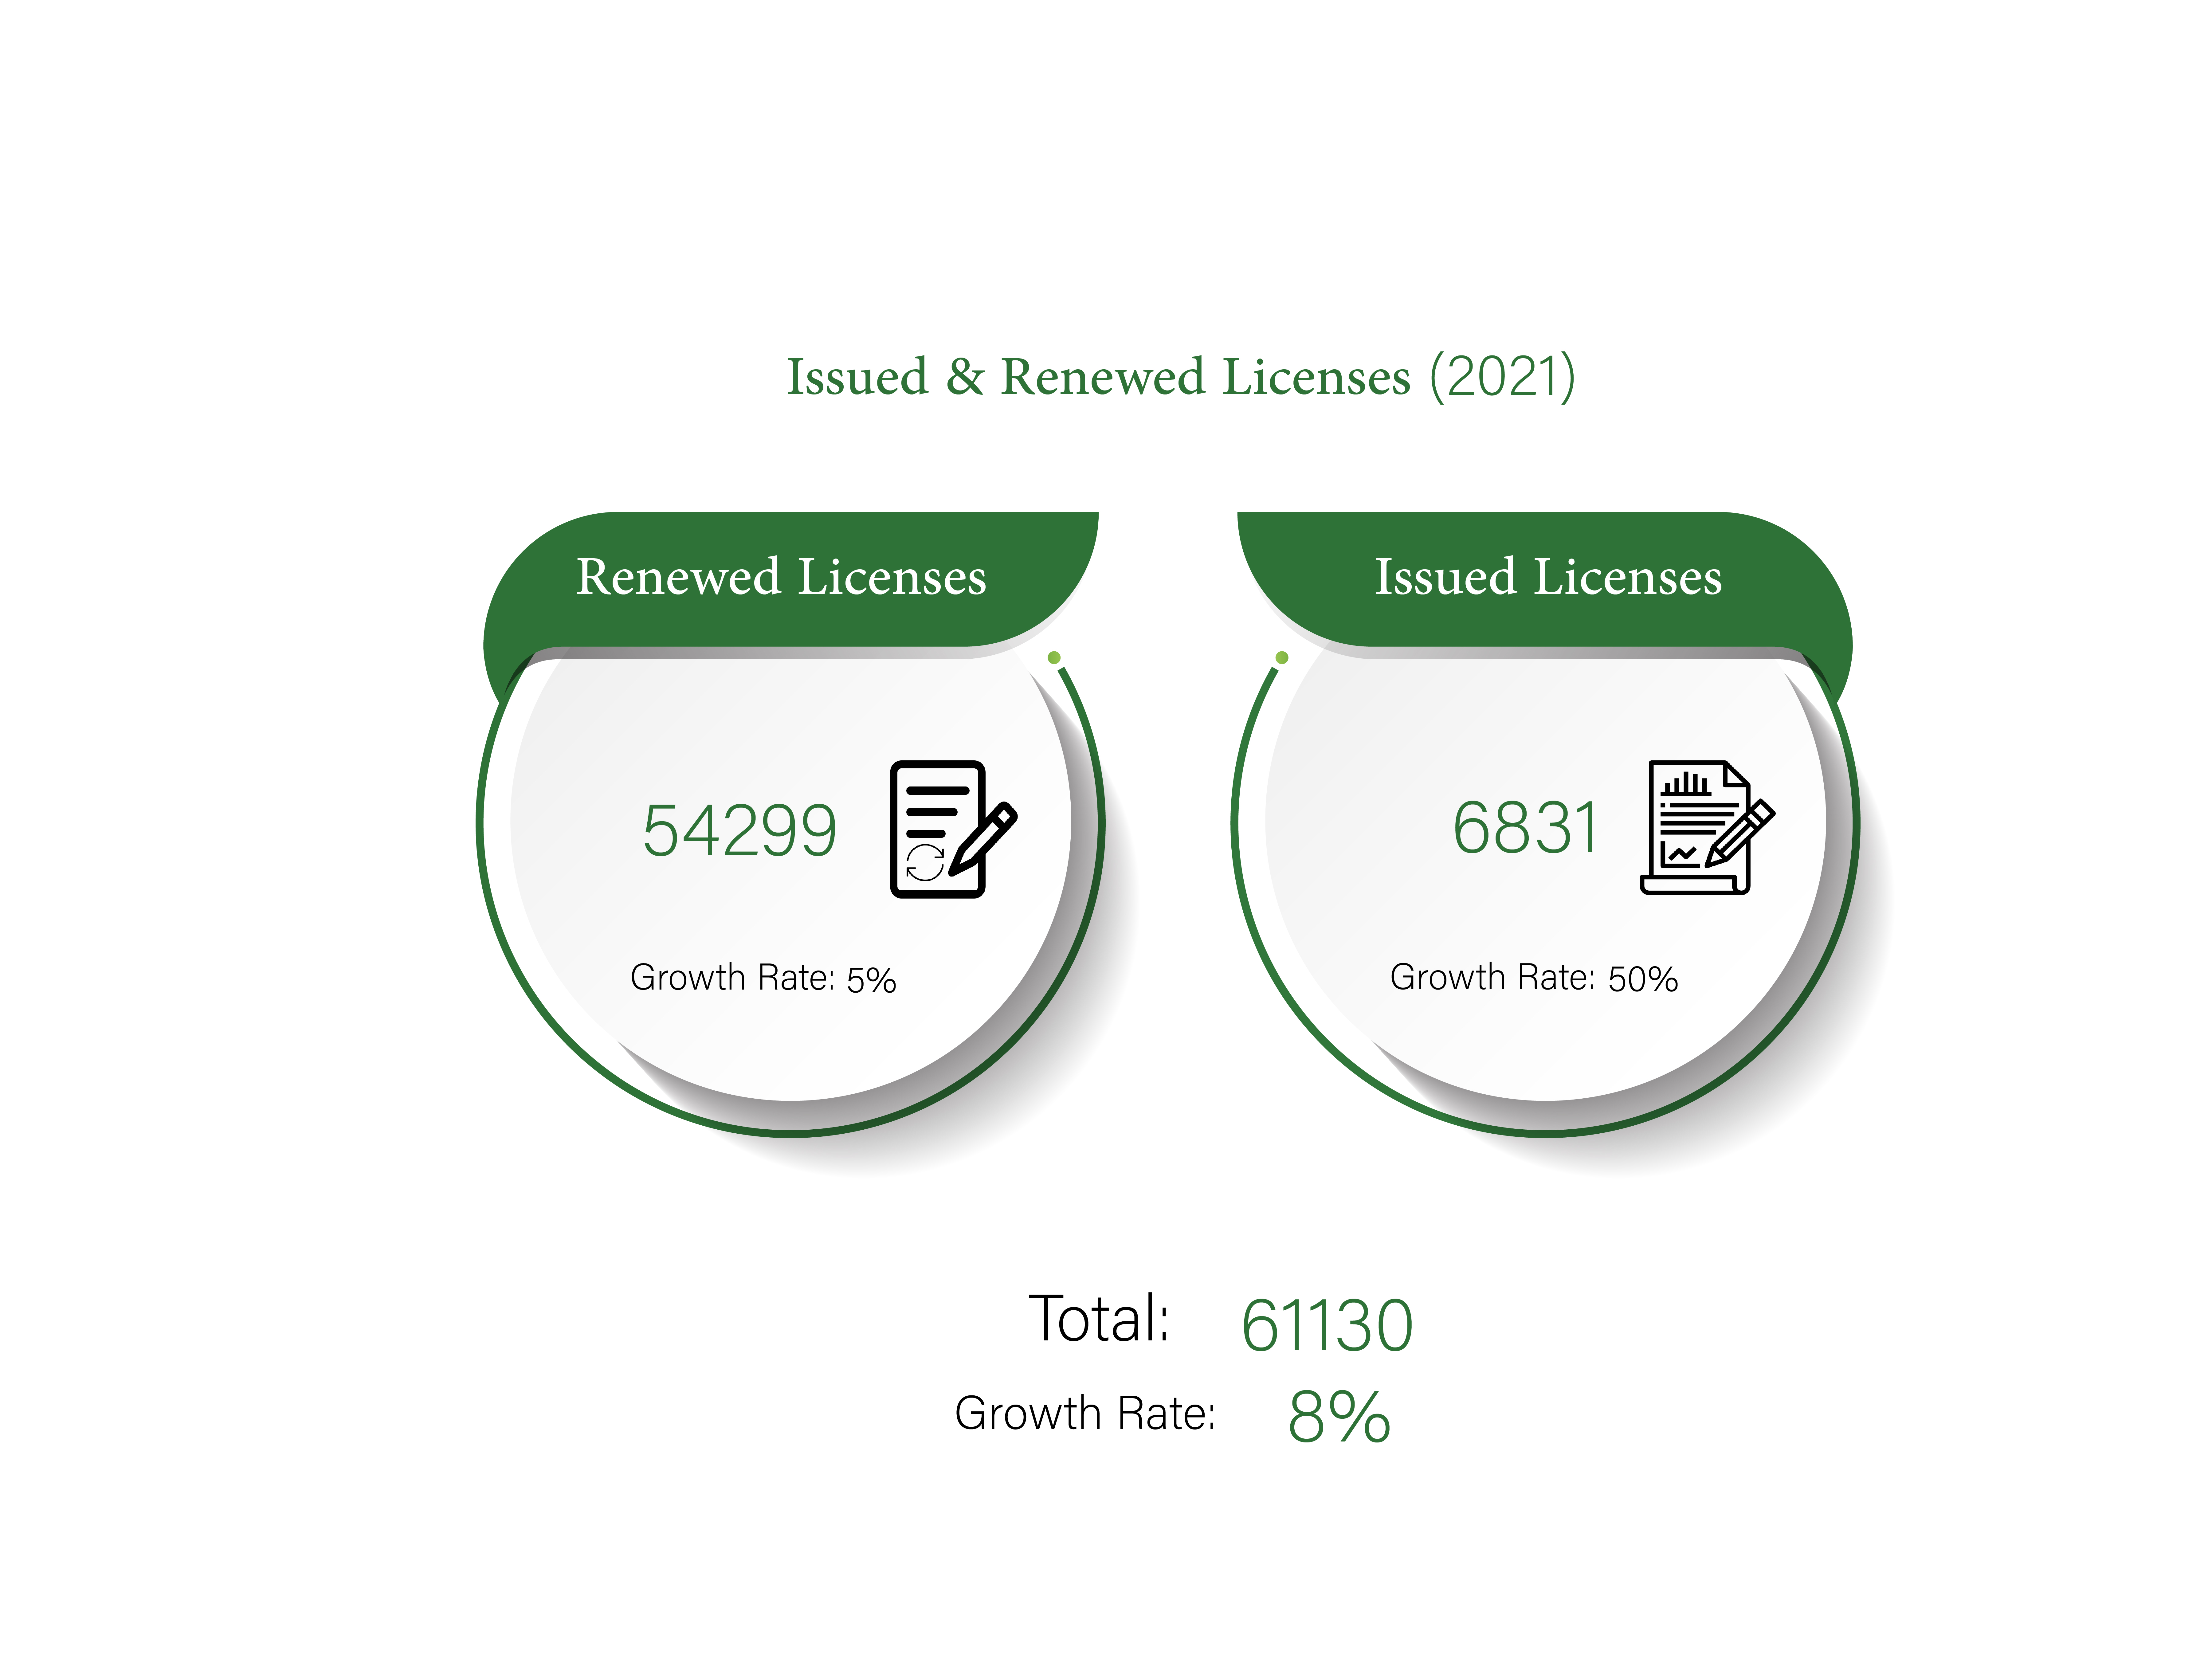 SEDD releases “Annual Licenses Report